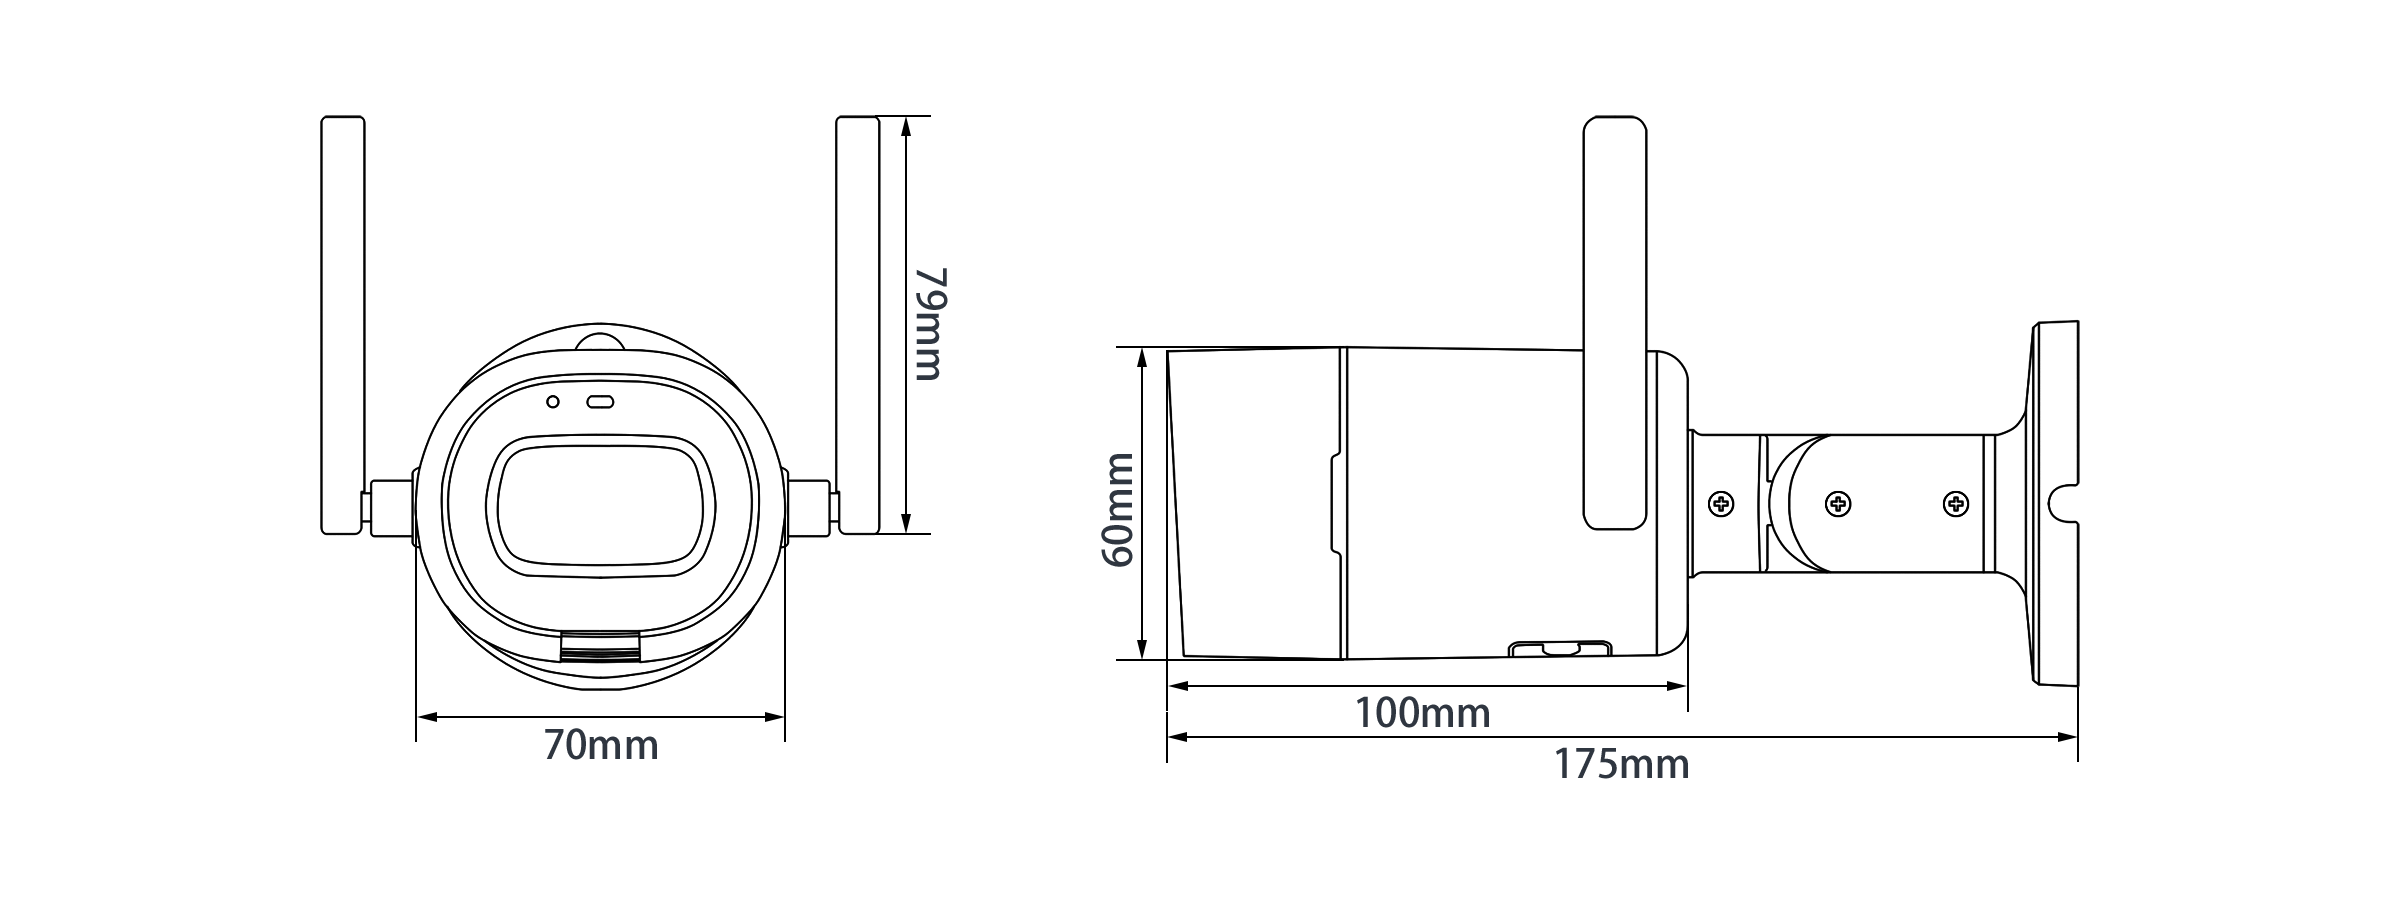 IPC-G26N寸法図